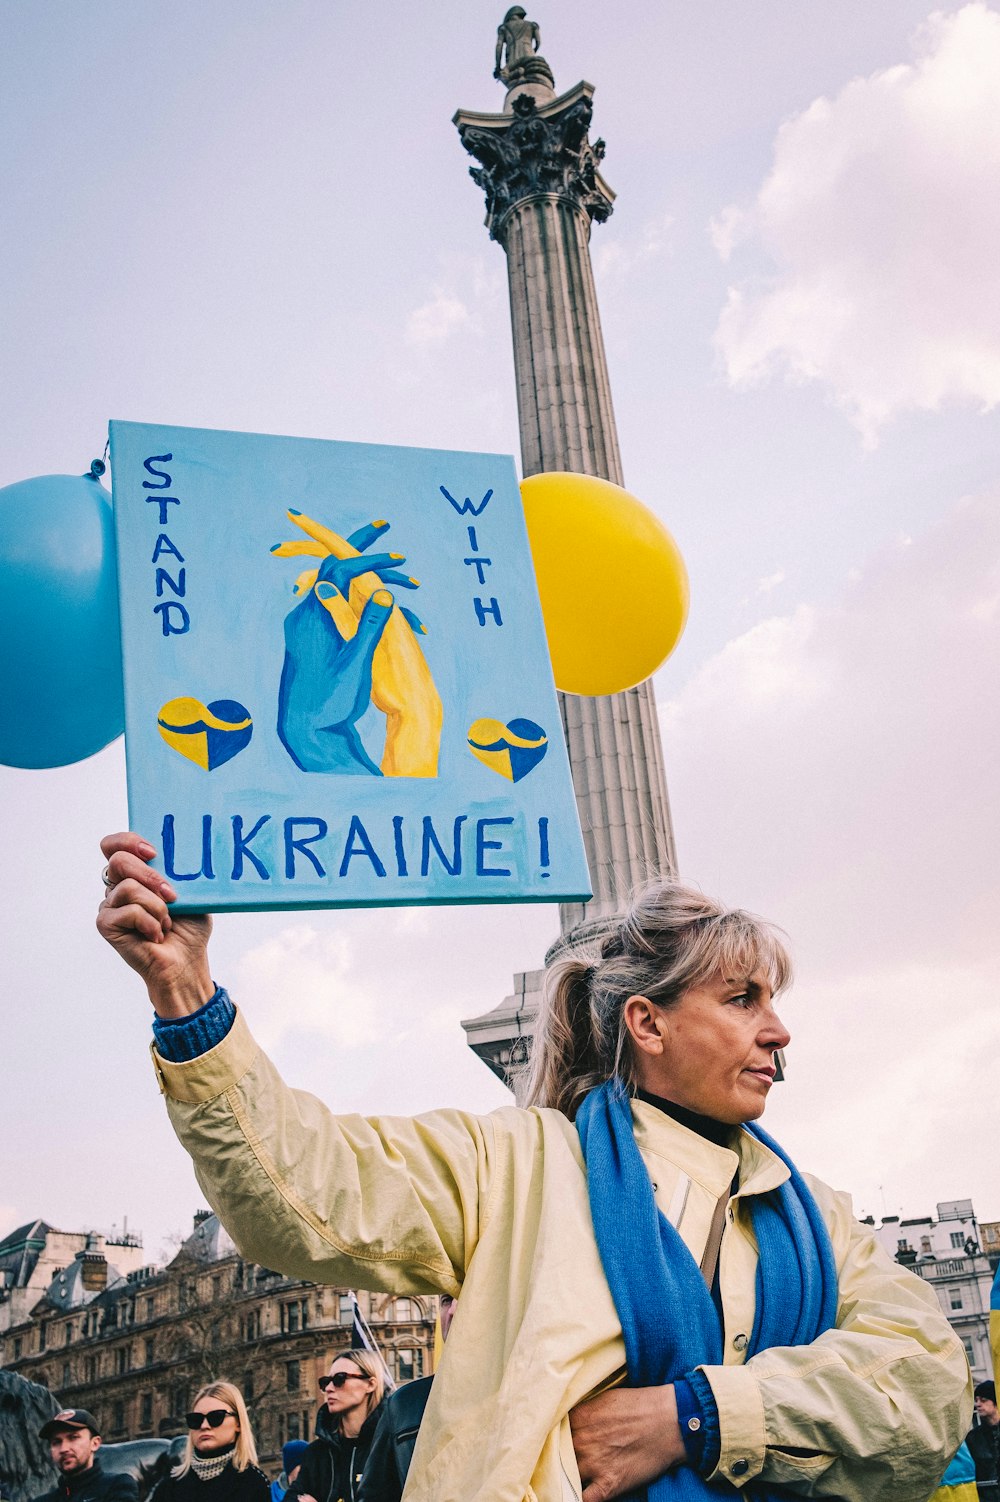 우크라이나라고 적힌 팻말을 들고 있는 여성